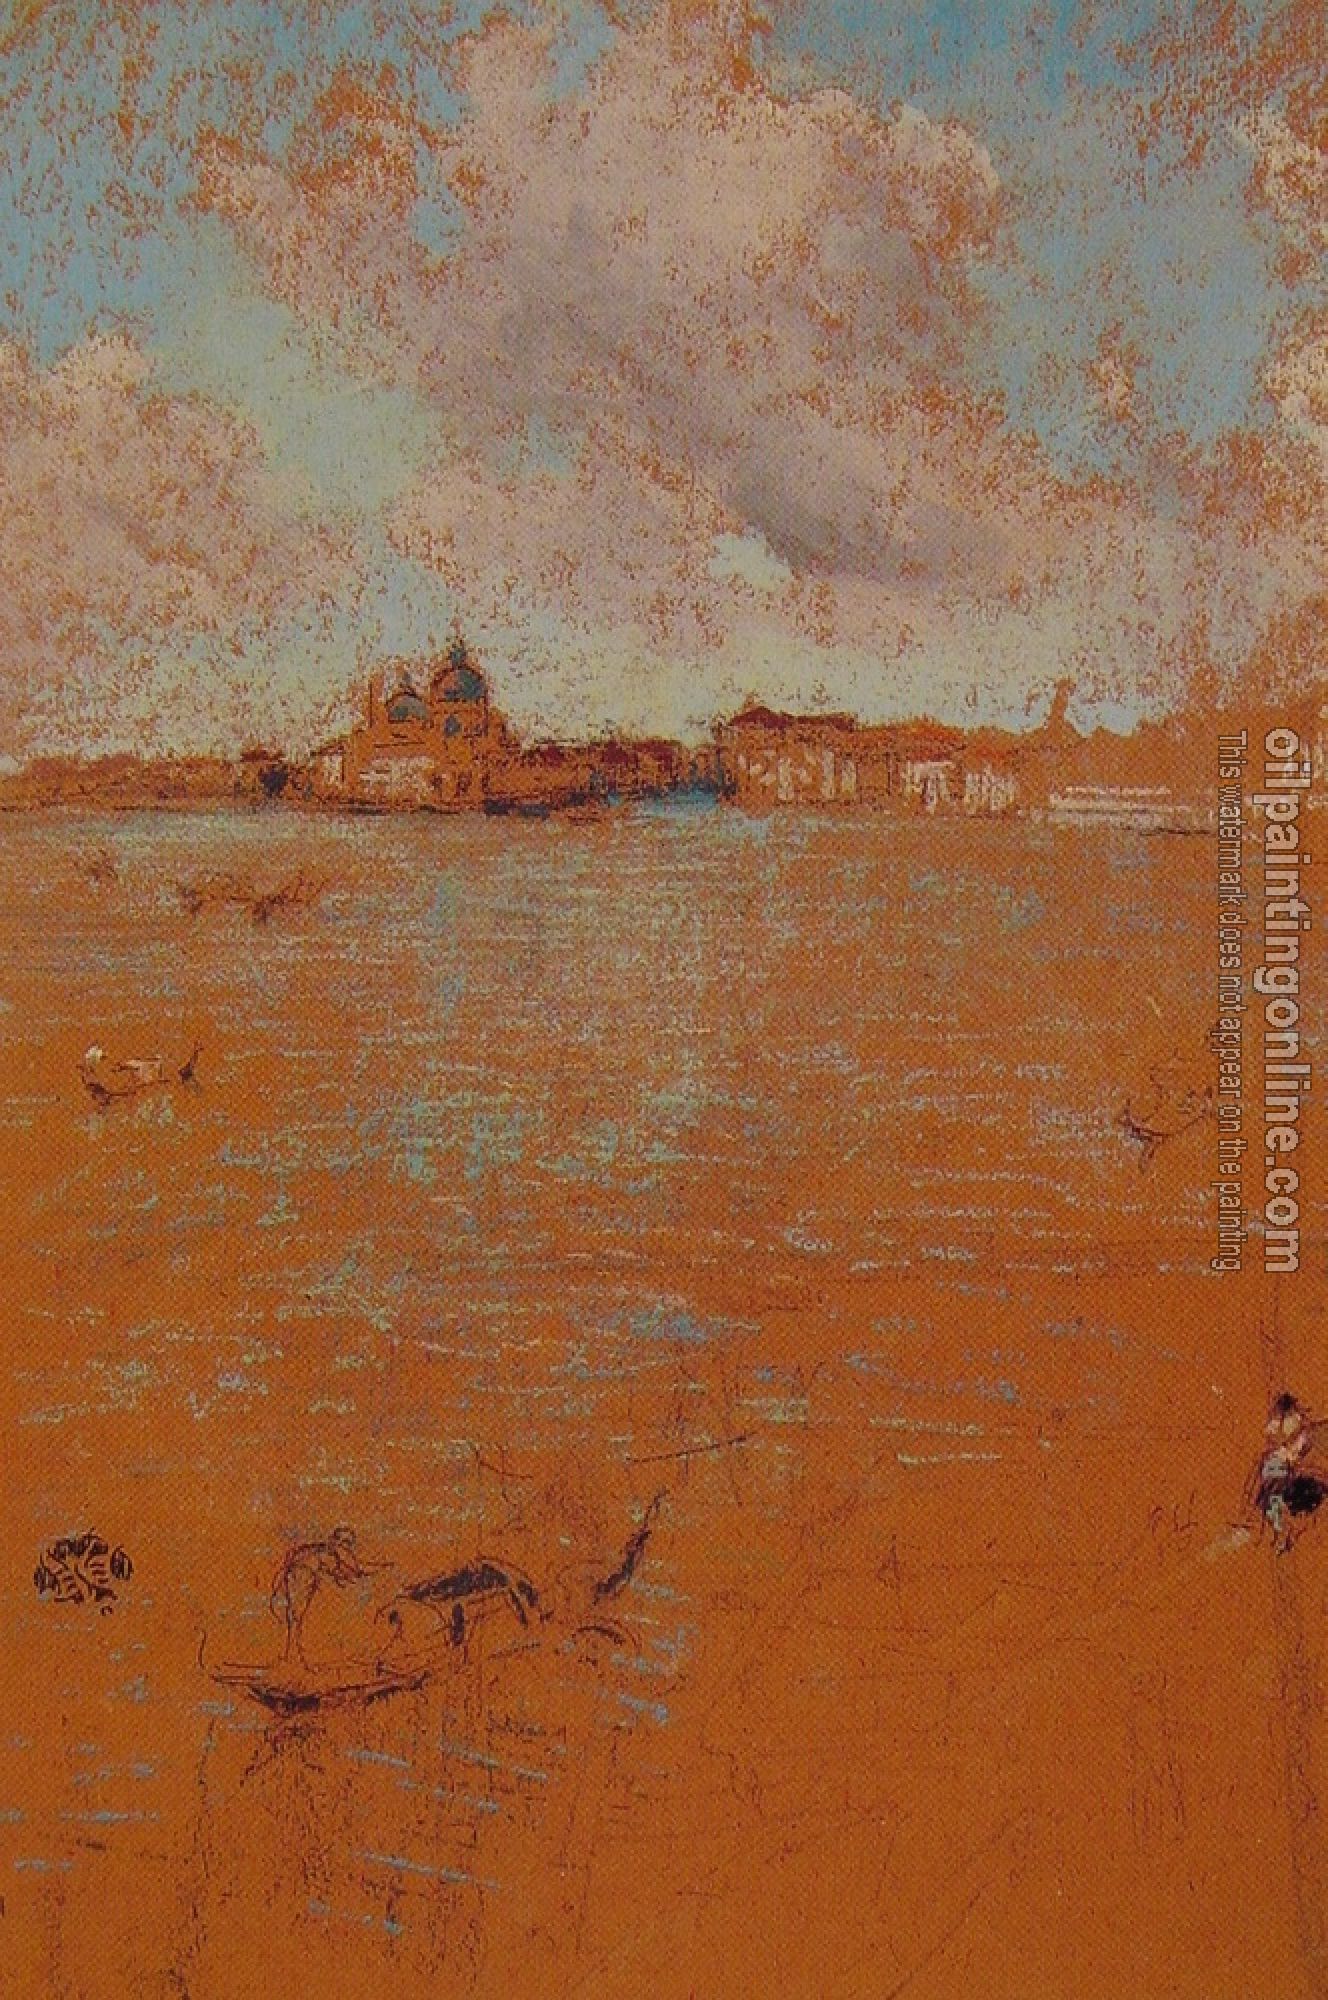 Whistler, James Abbottb McNeill - Venetian Scene